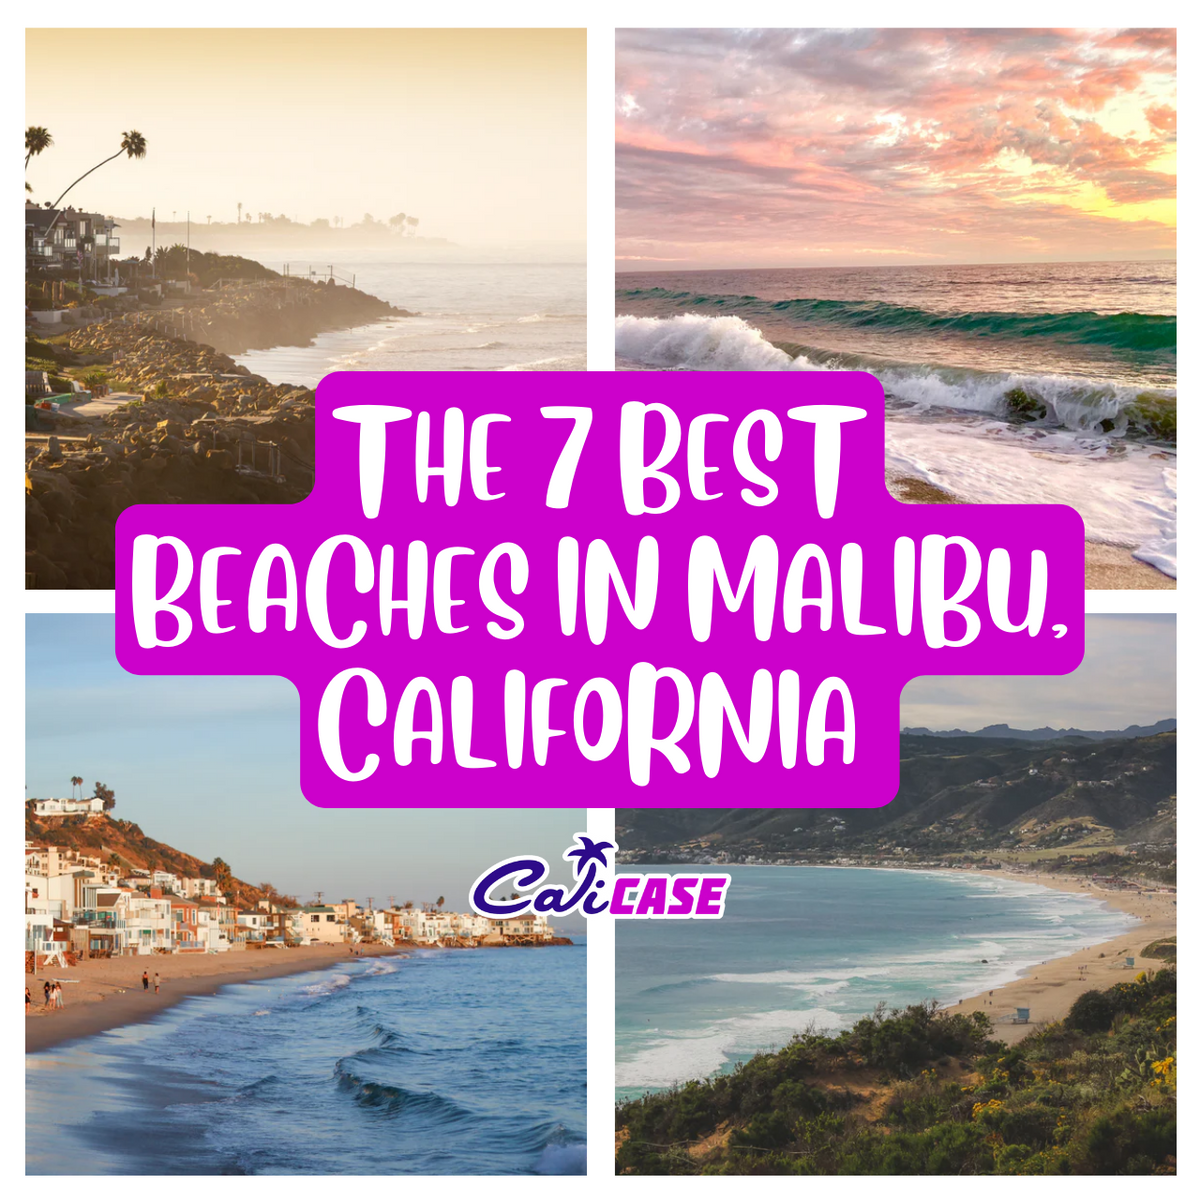 A Day at the Beach - Malibu Beaches